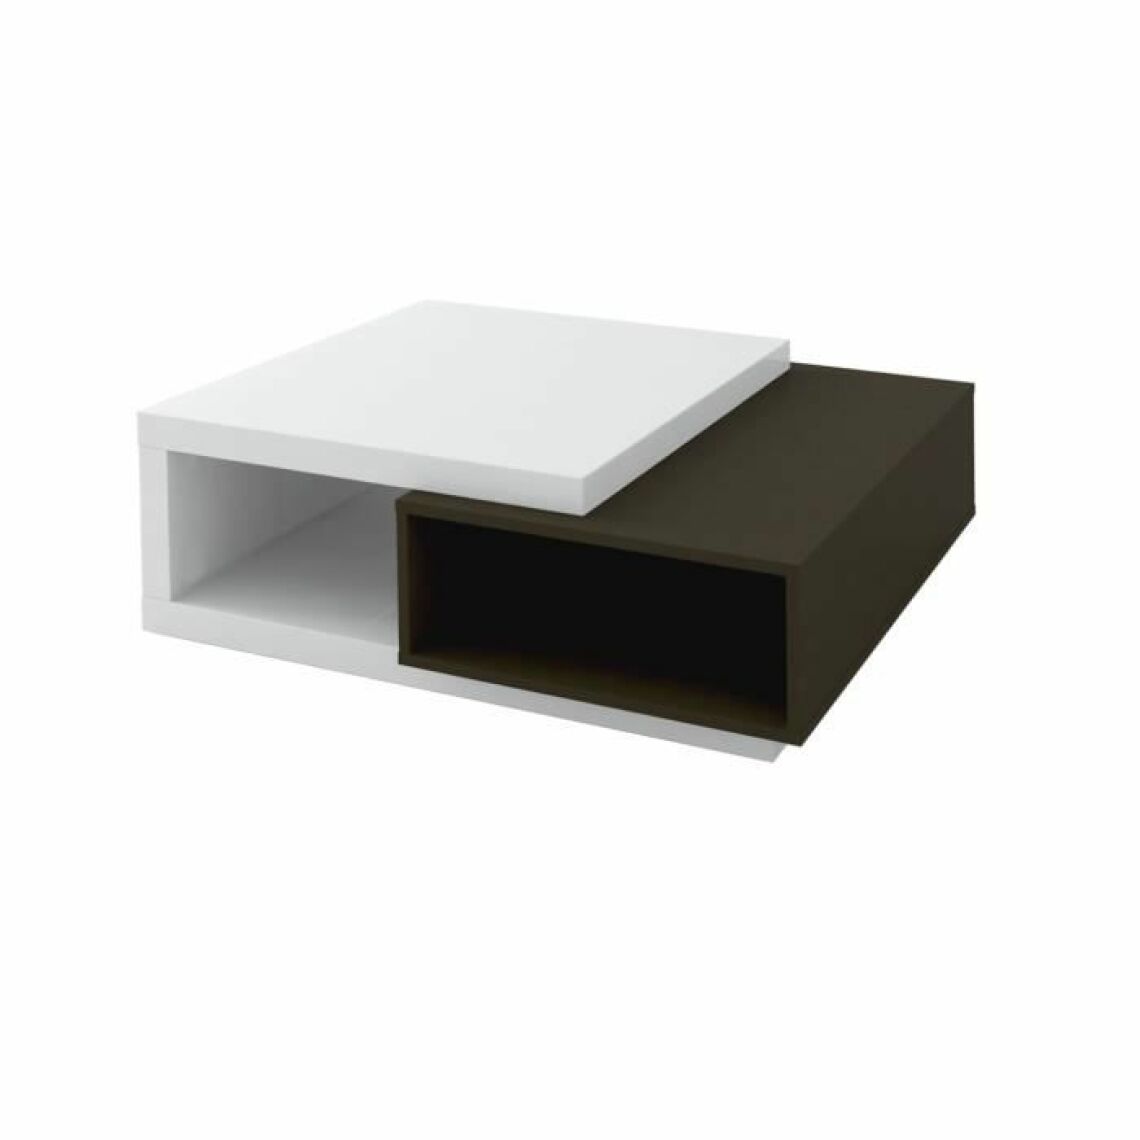 SCIAE - Table basse - Panneaux de particules - Noir et blanc - Style contemporain - 2 rangements - L 100 x P 95 x H 38 cm - KARAT - Tables basses